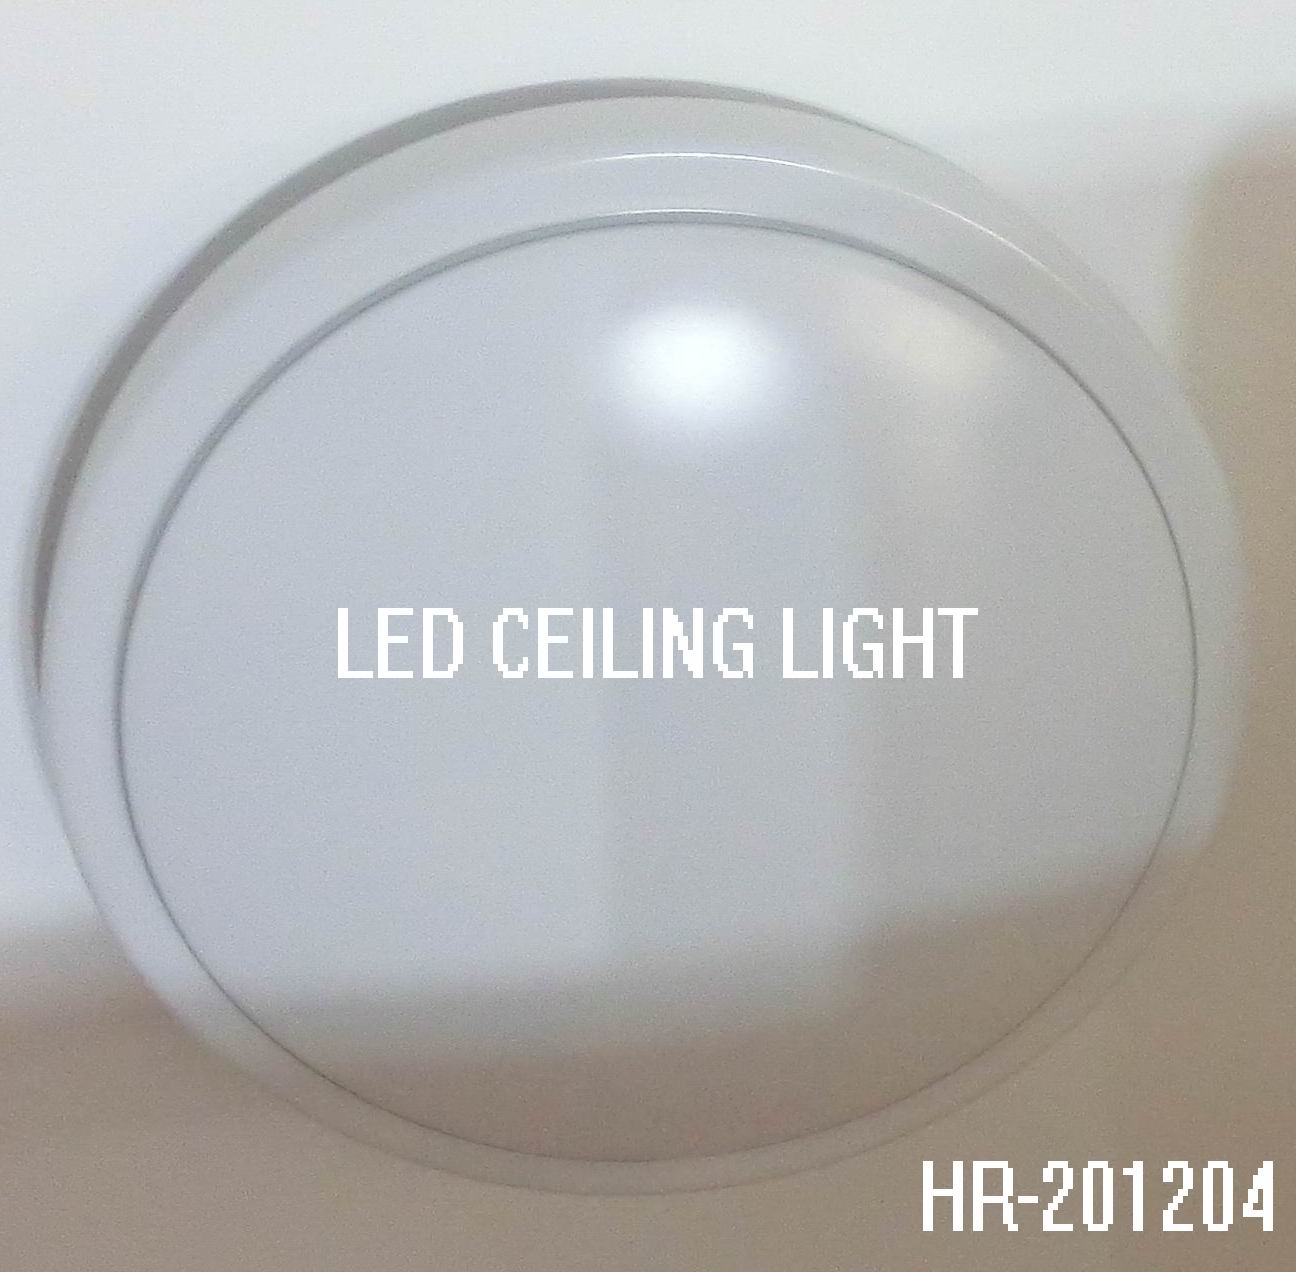 LED CEILING LIGHT HR-201204